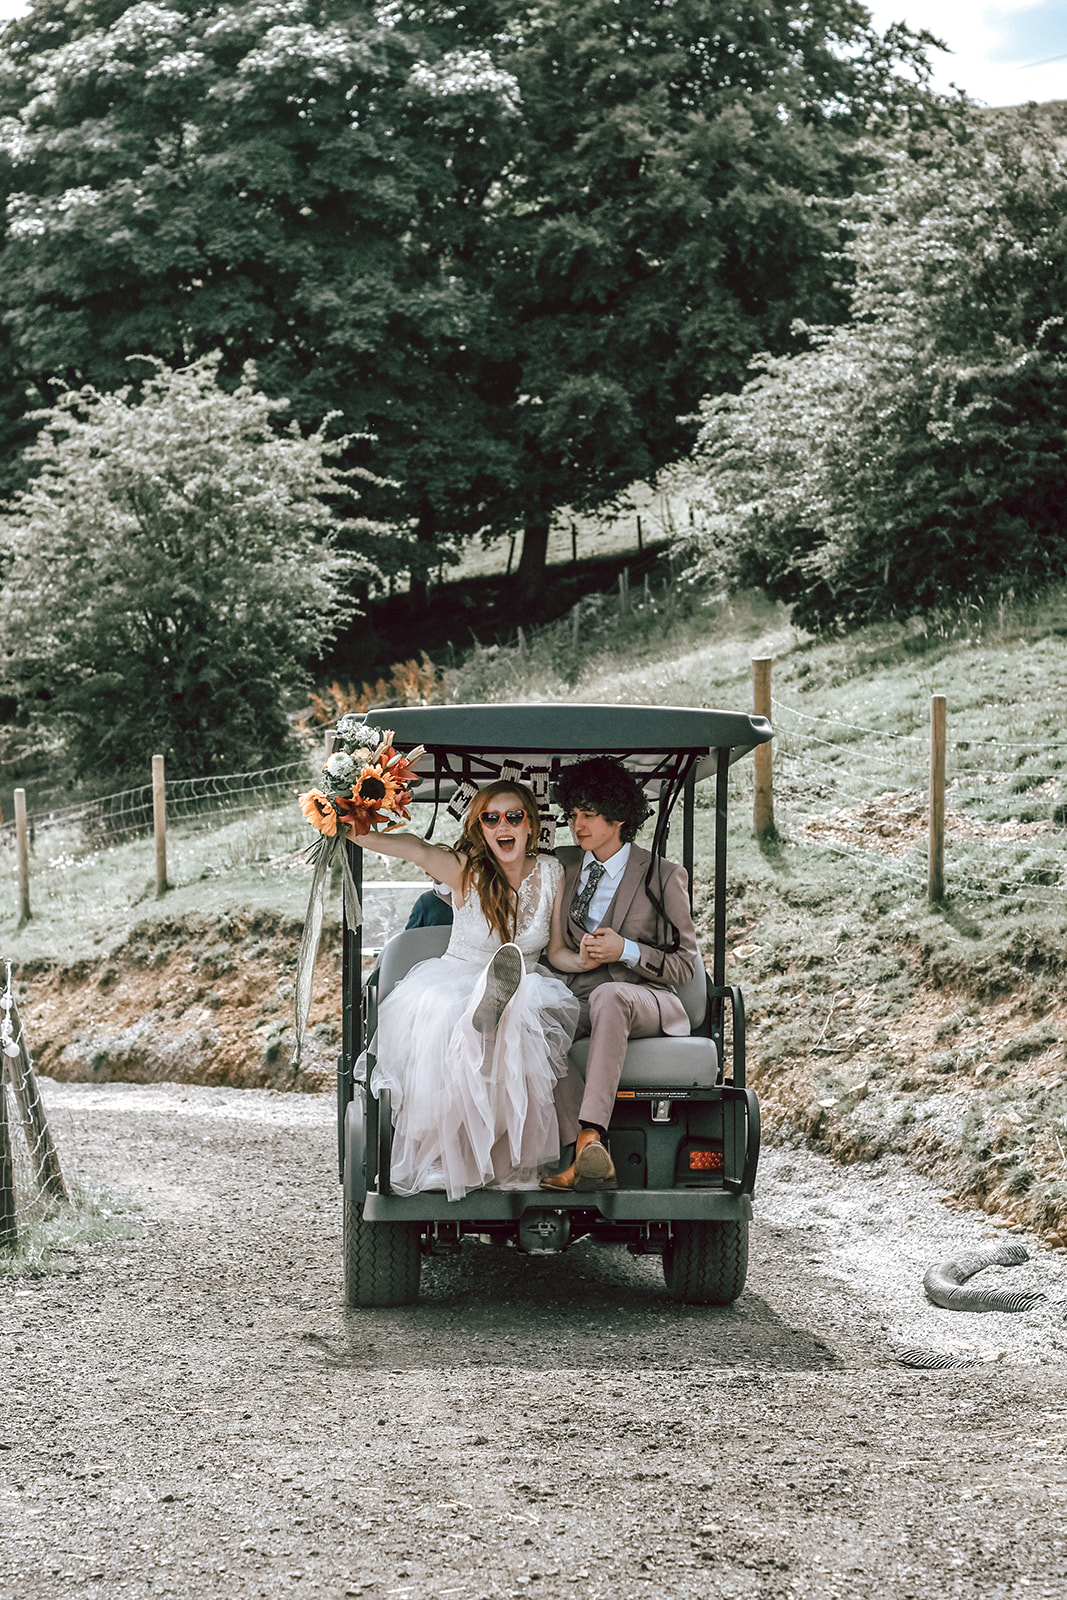 rustic festival wedding - wedding golf buggy - fun wedding ideas